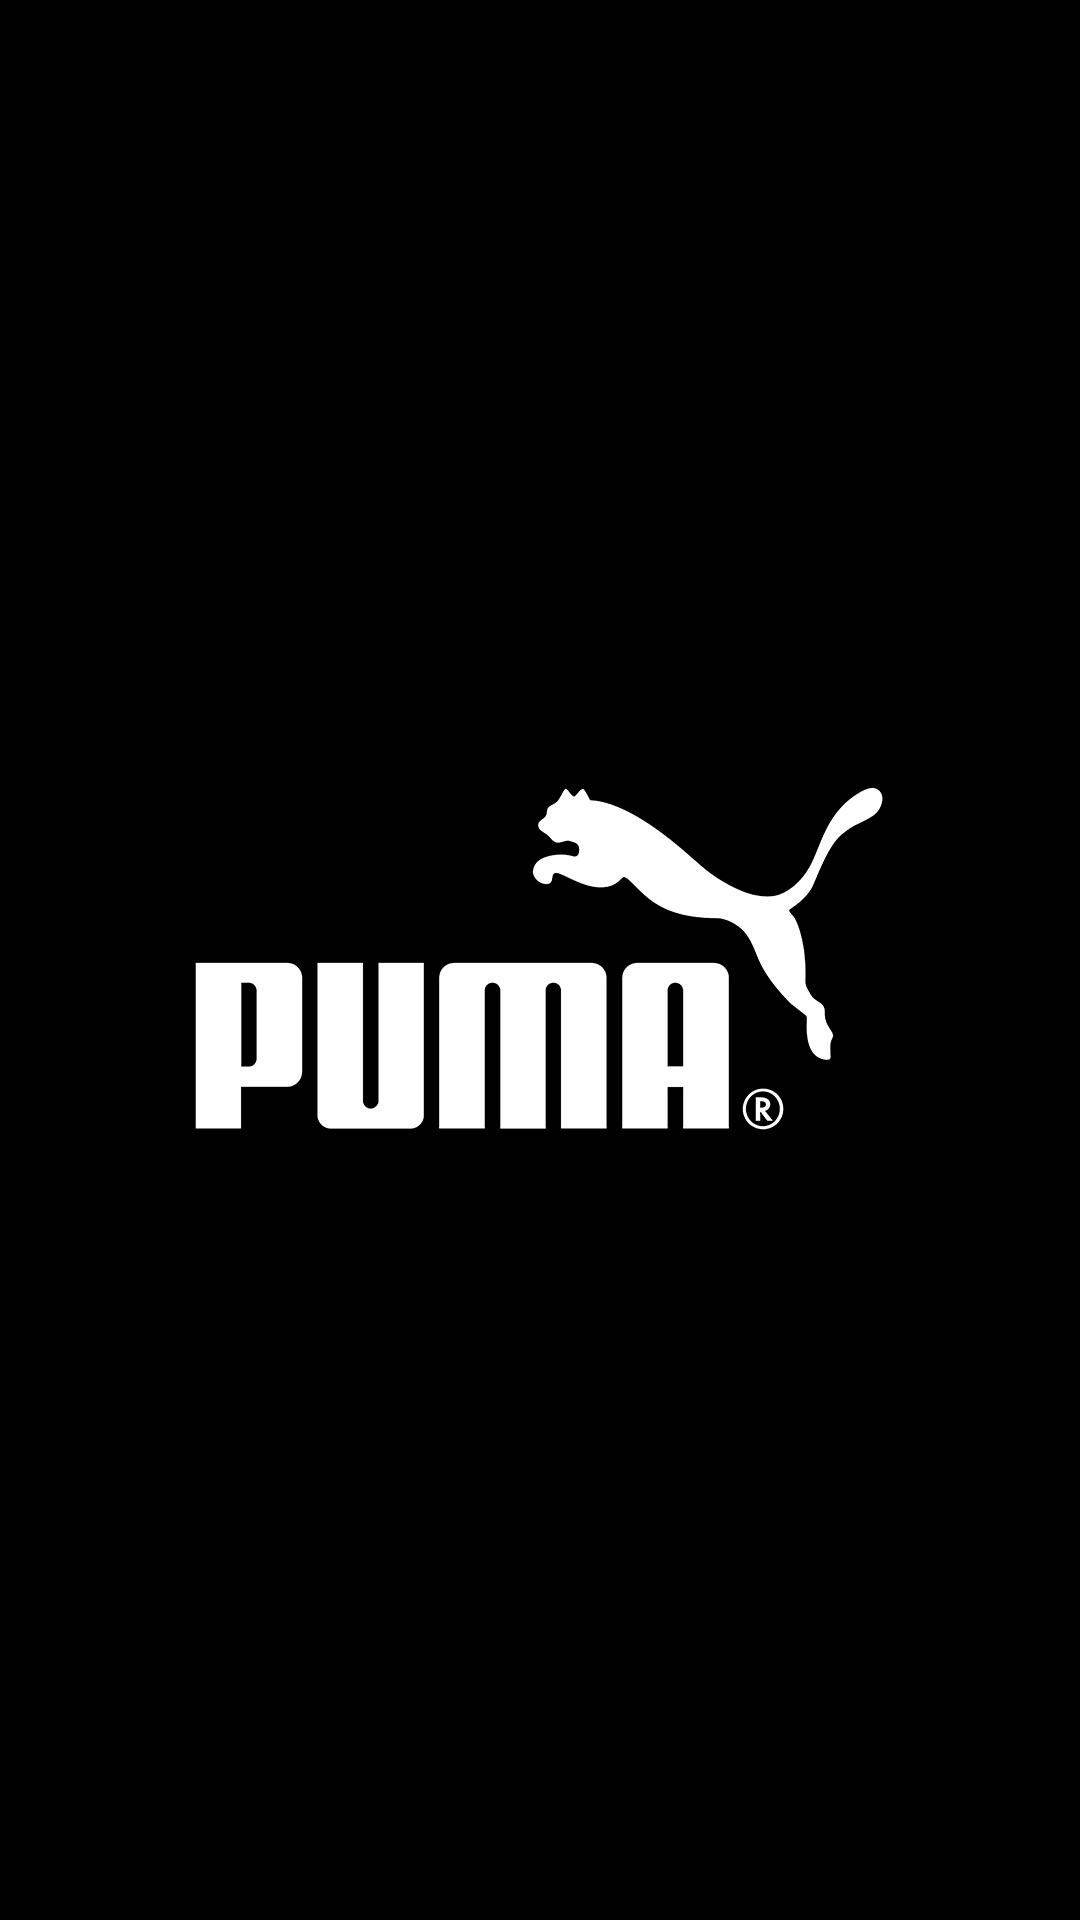 Iconic Puma Brand Logo | Wallpapers.com